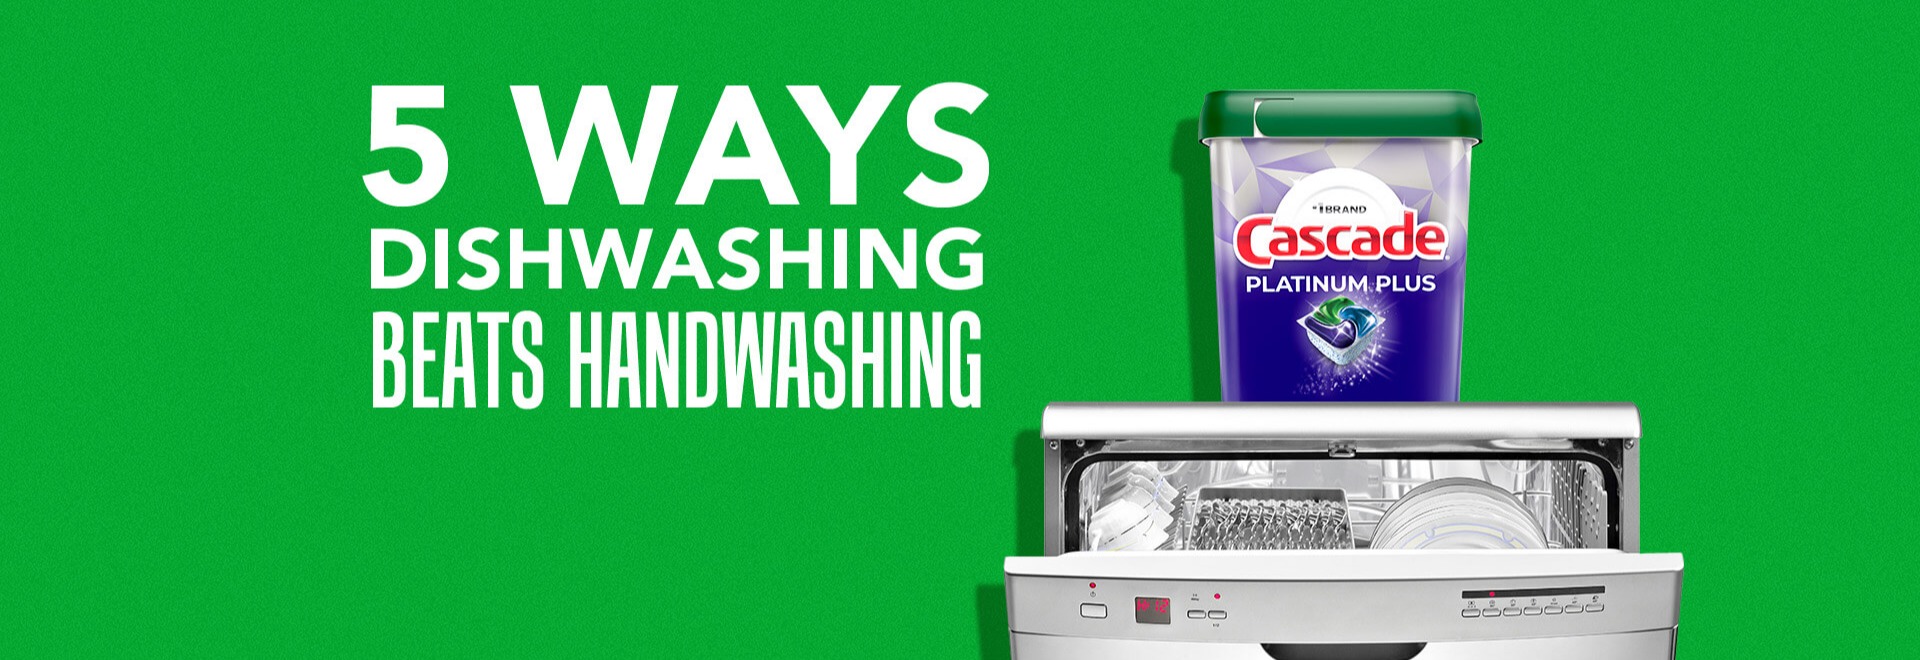 5 ways dishwashing beats handwashing with Cascade Platinum dishwasher pods container